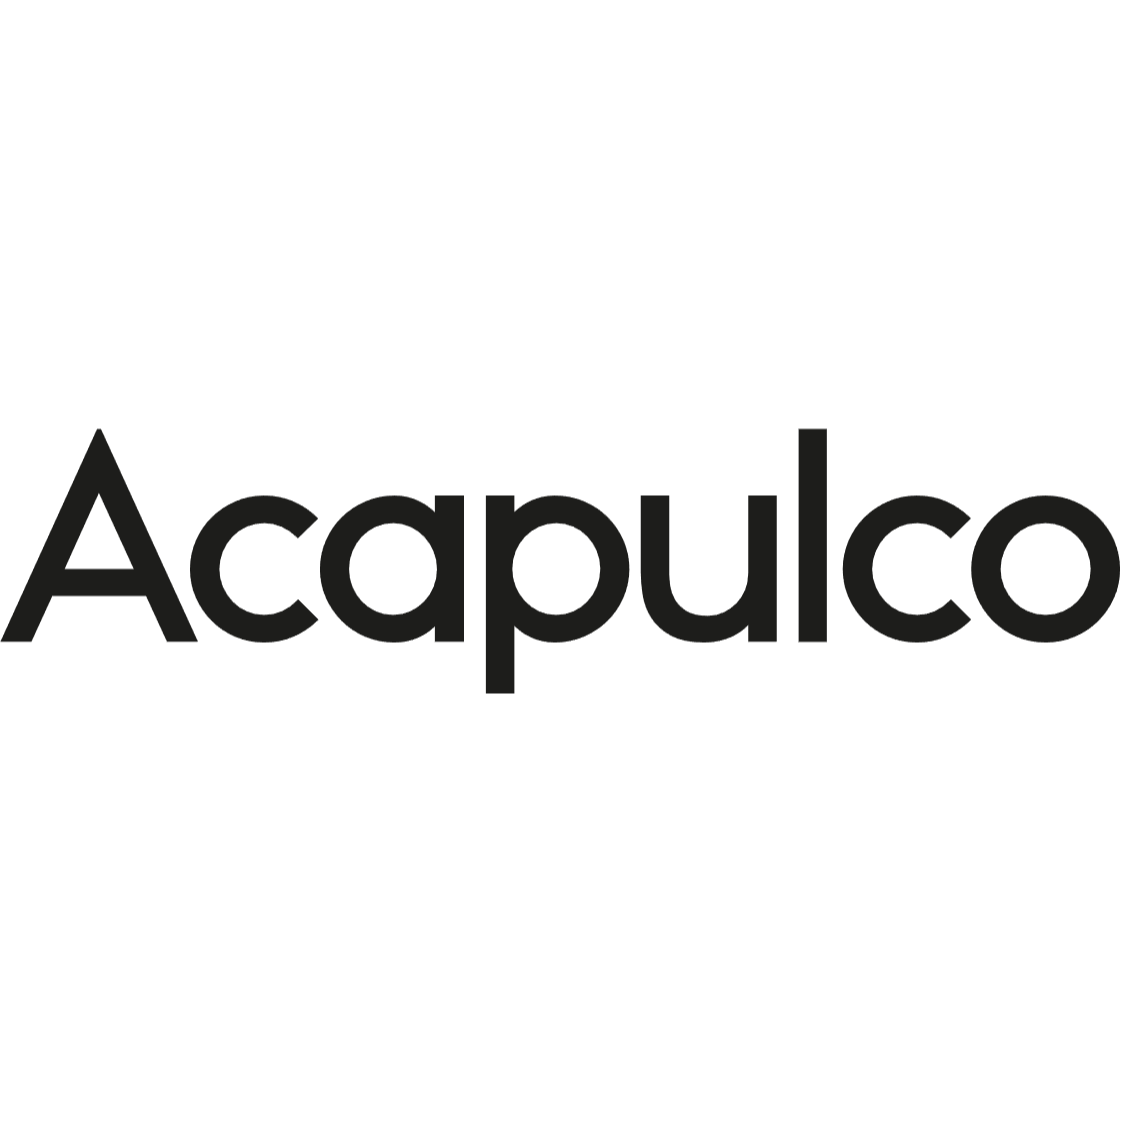 Acapulco Design  